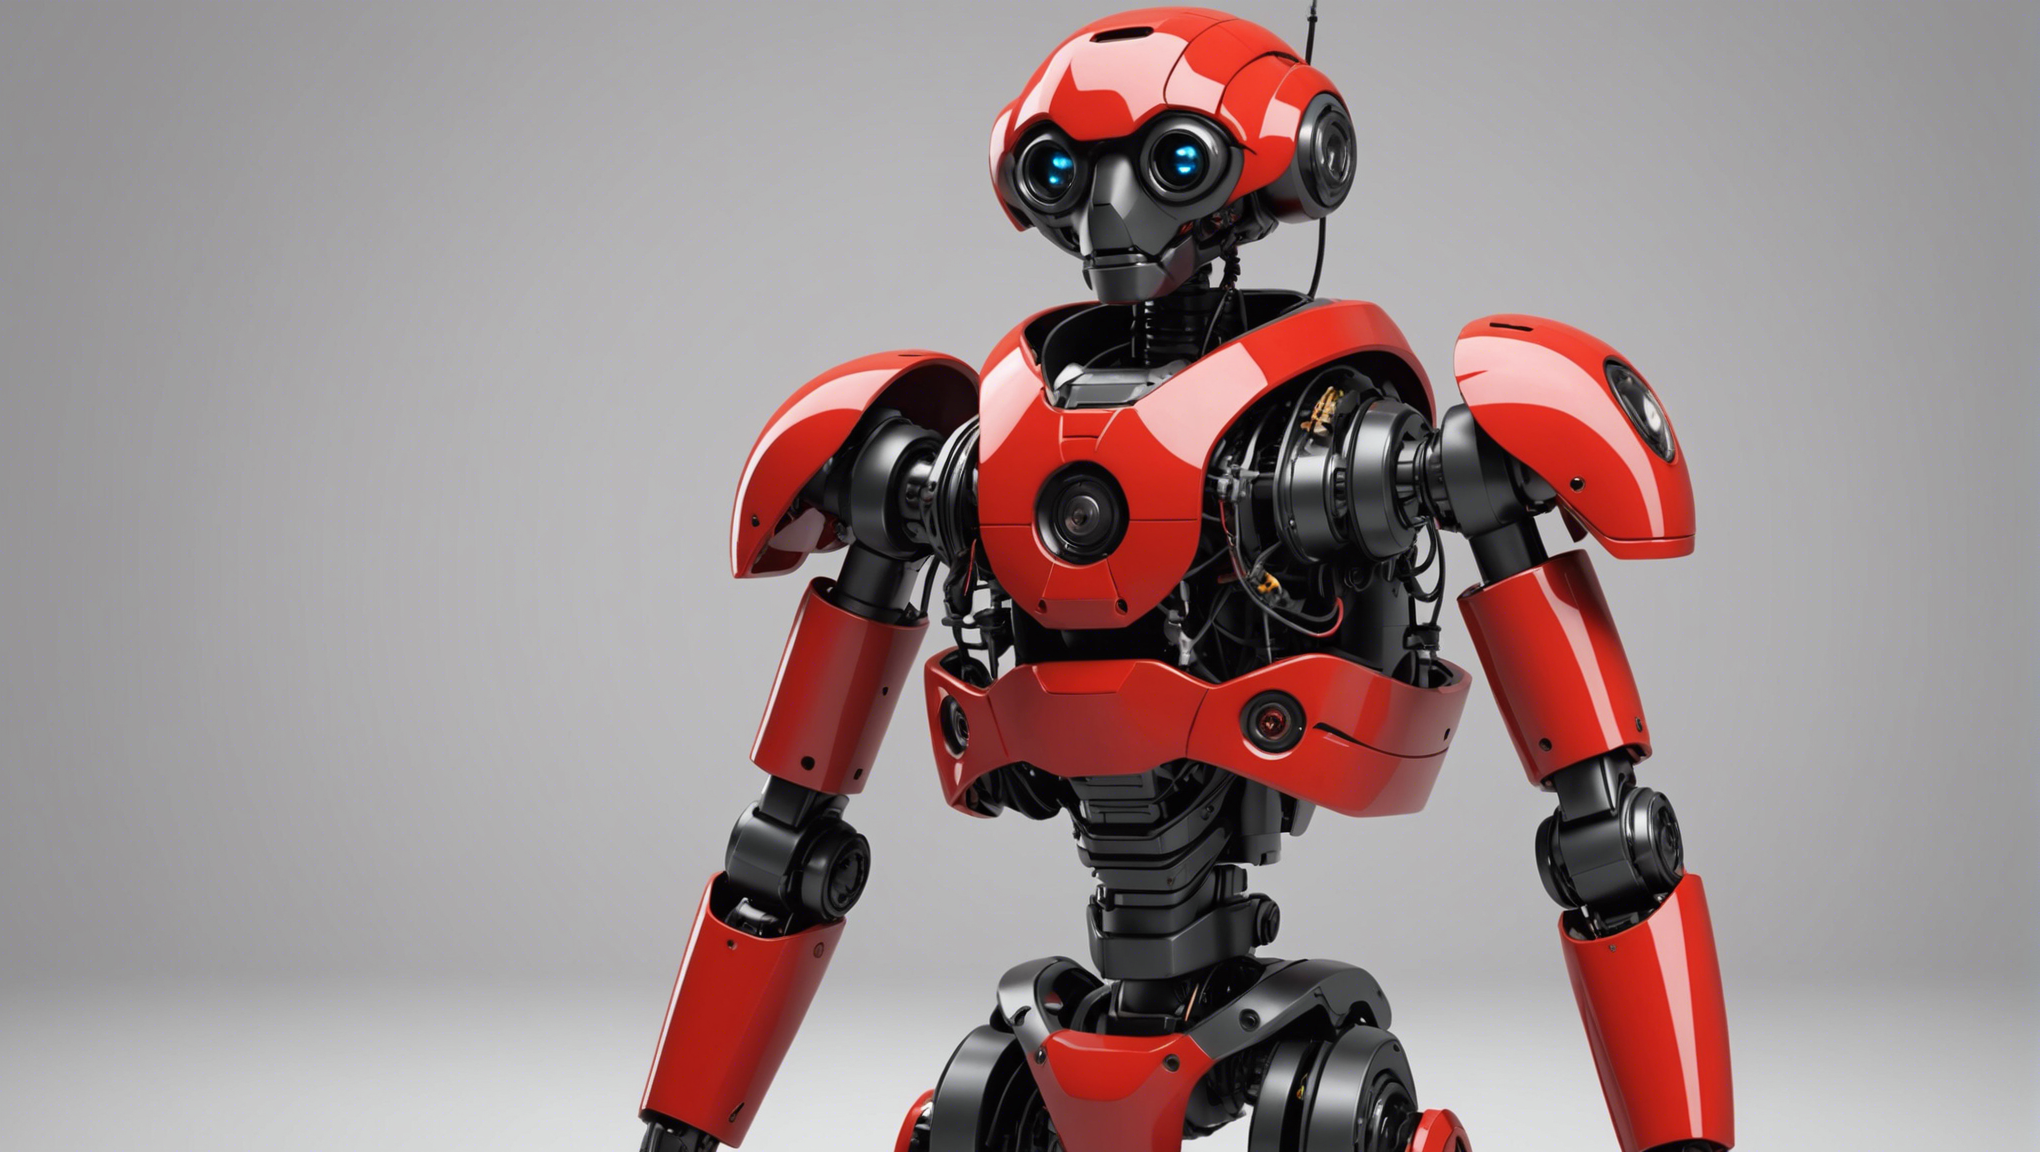 découvrez comment démarrer facilement avec les robots poppy humanoid et poppy torso pour apprendre la robotique et la programmation de manière ludique et interactive.